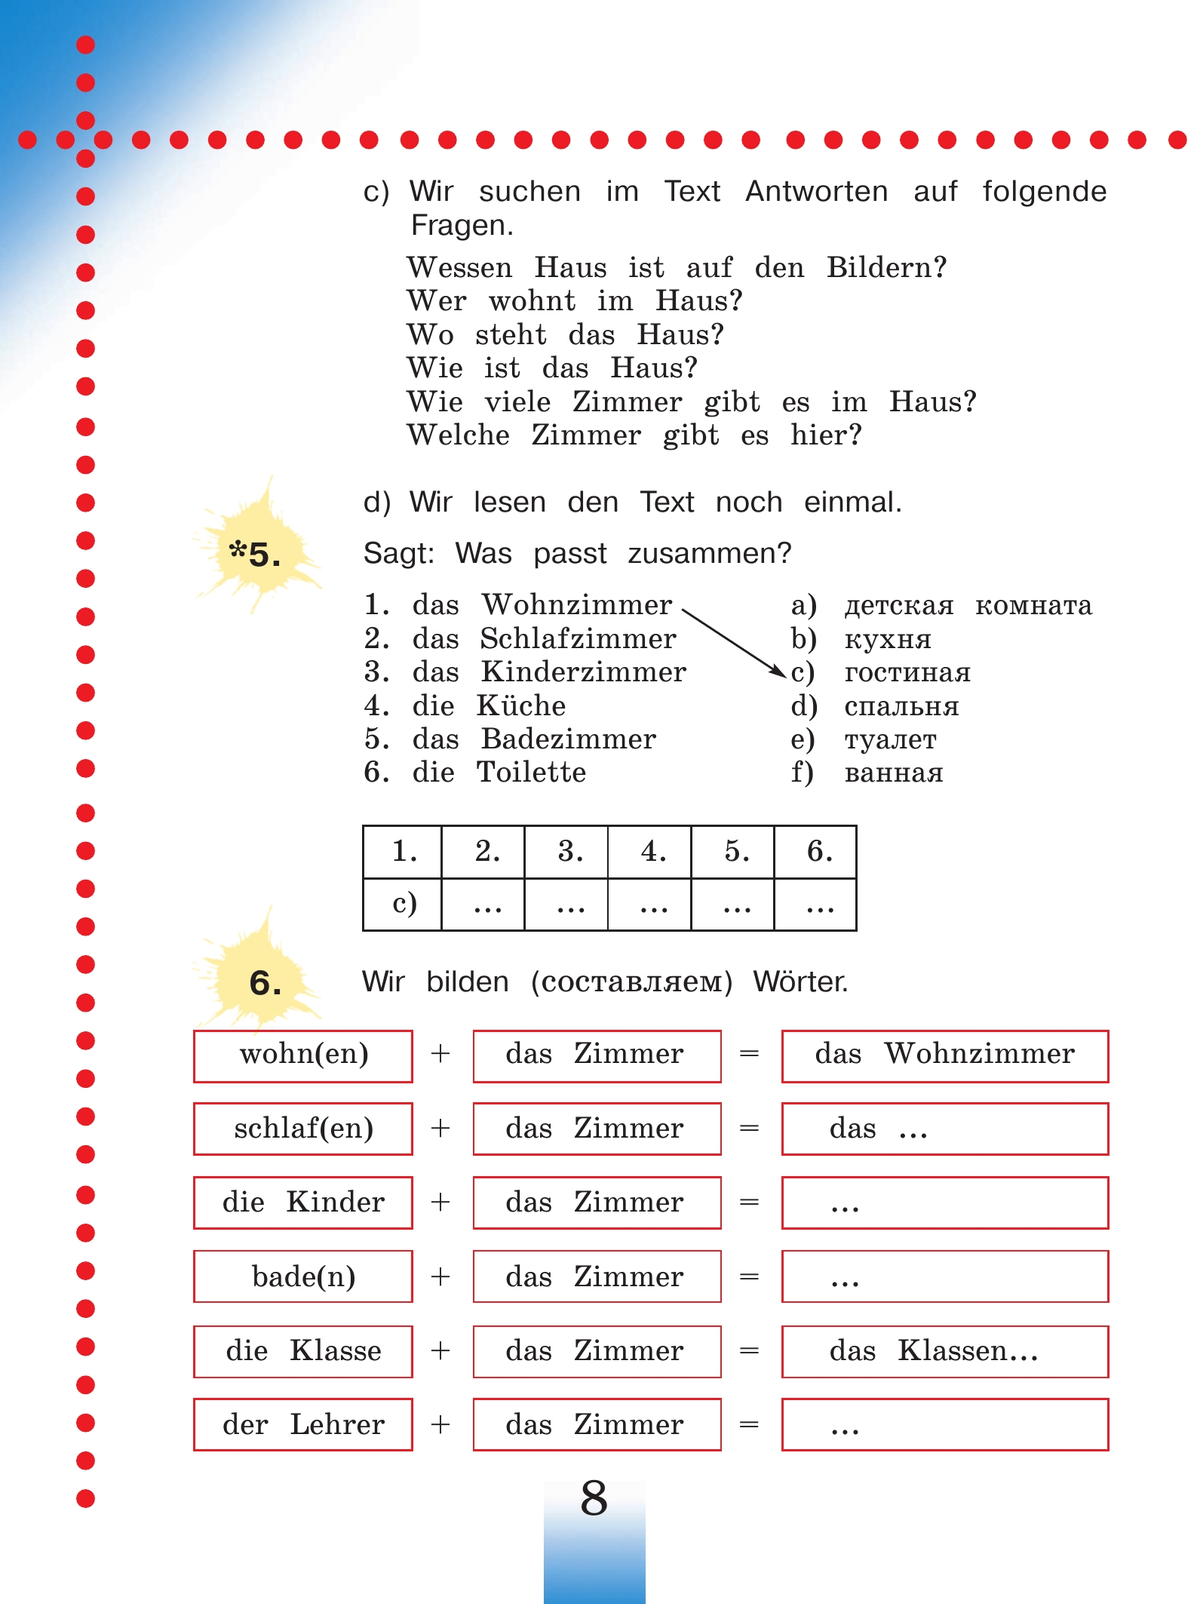 Немецкий язык. 4 класс. Учебник. В 2 ч. Часть 2 11